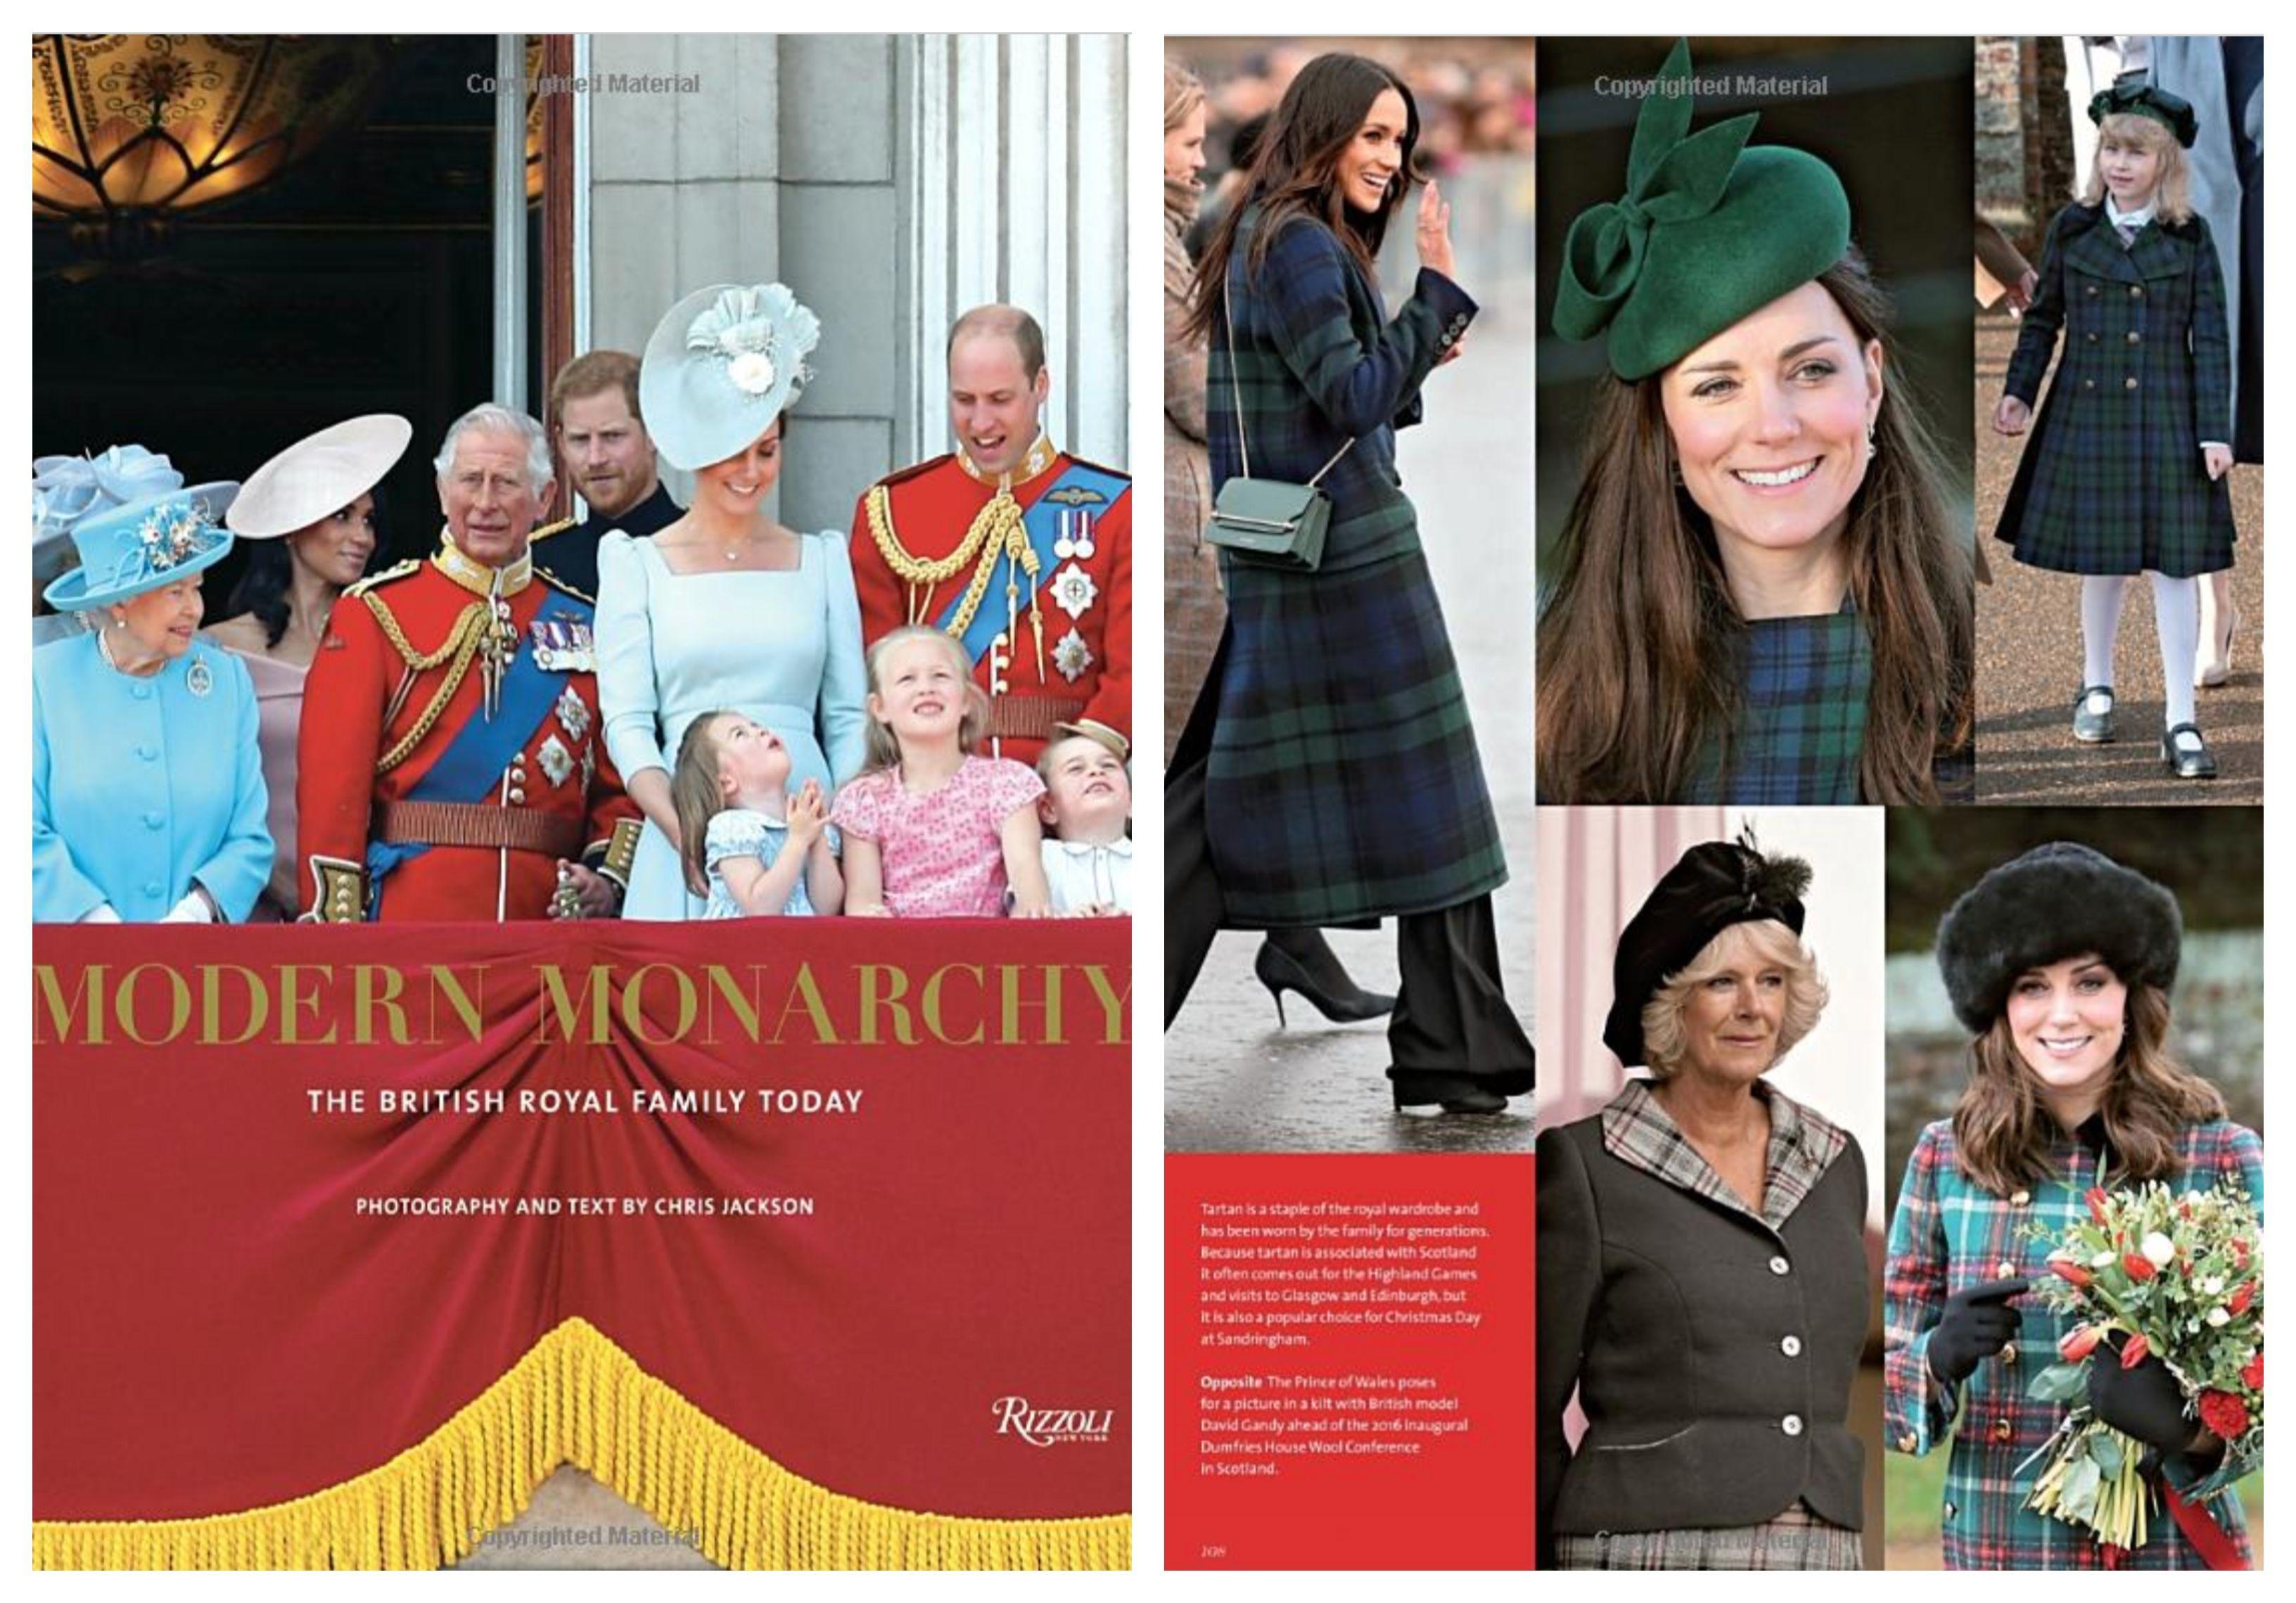 Smiling Catherine, Herzogin von Cambridge, signierte limitierte Auflage – Photograph von Chris Jackson